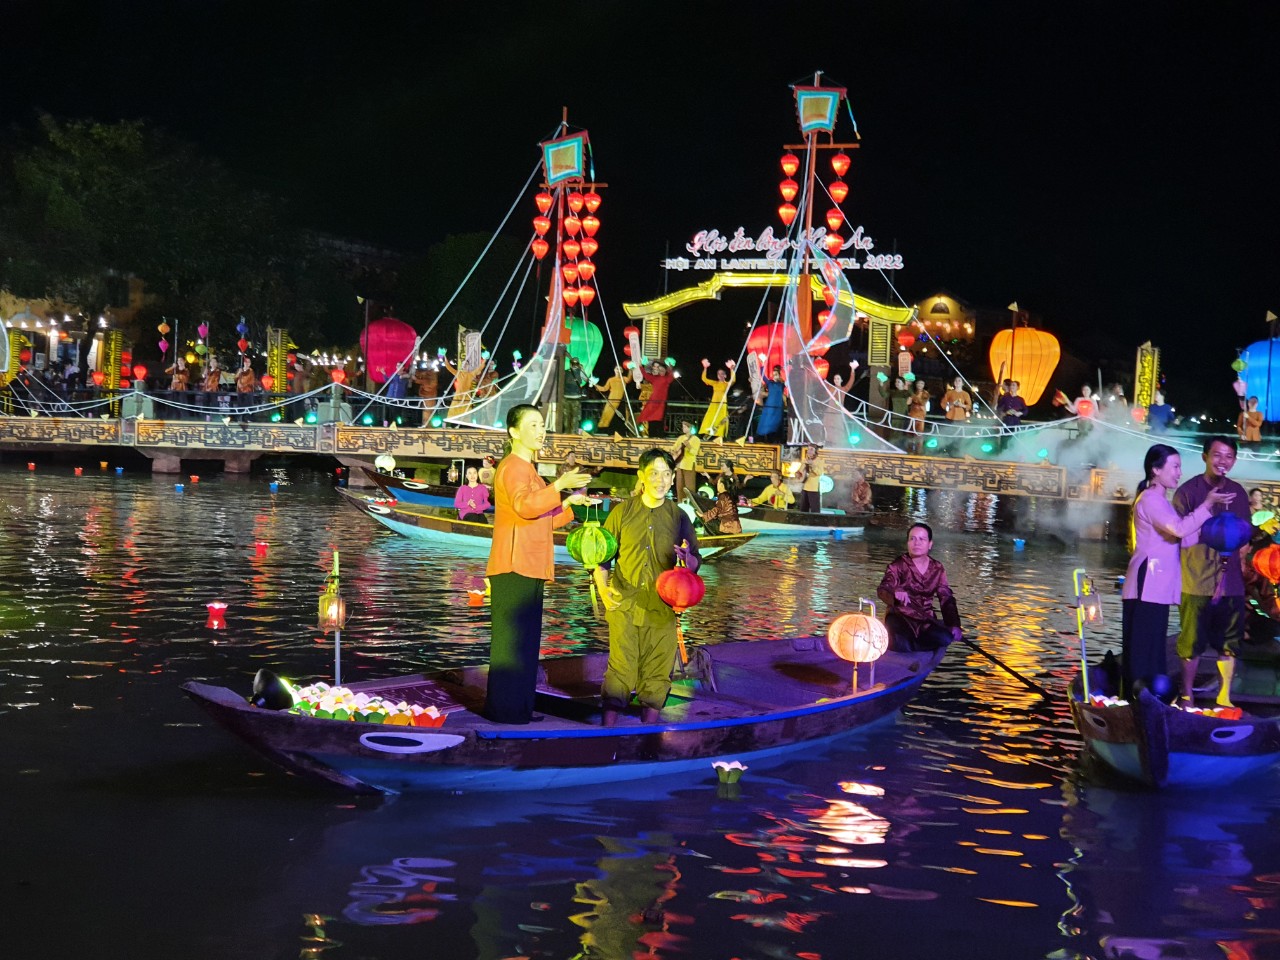 Lễ hội đèn lồng Hội An chào mừng năm mới đang đến gần. Ảnh: VGP/Lưu Hương